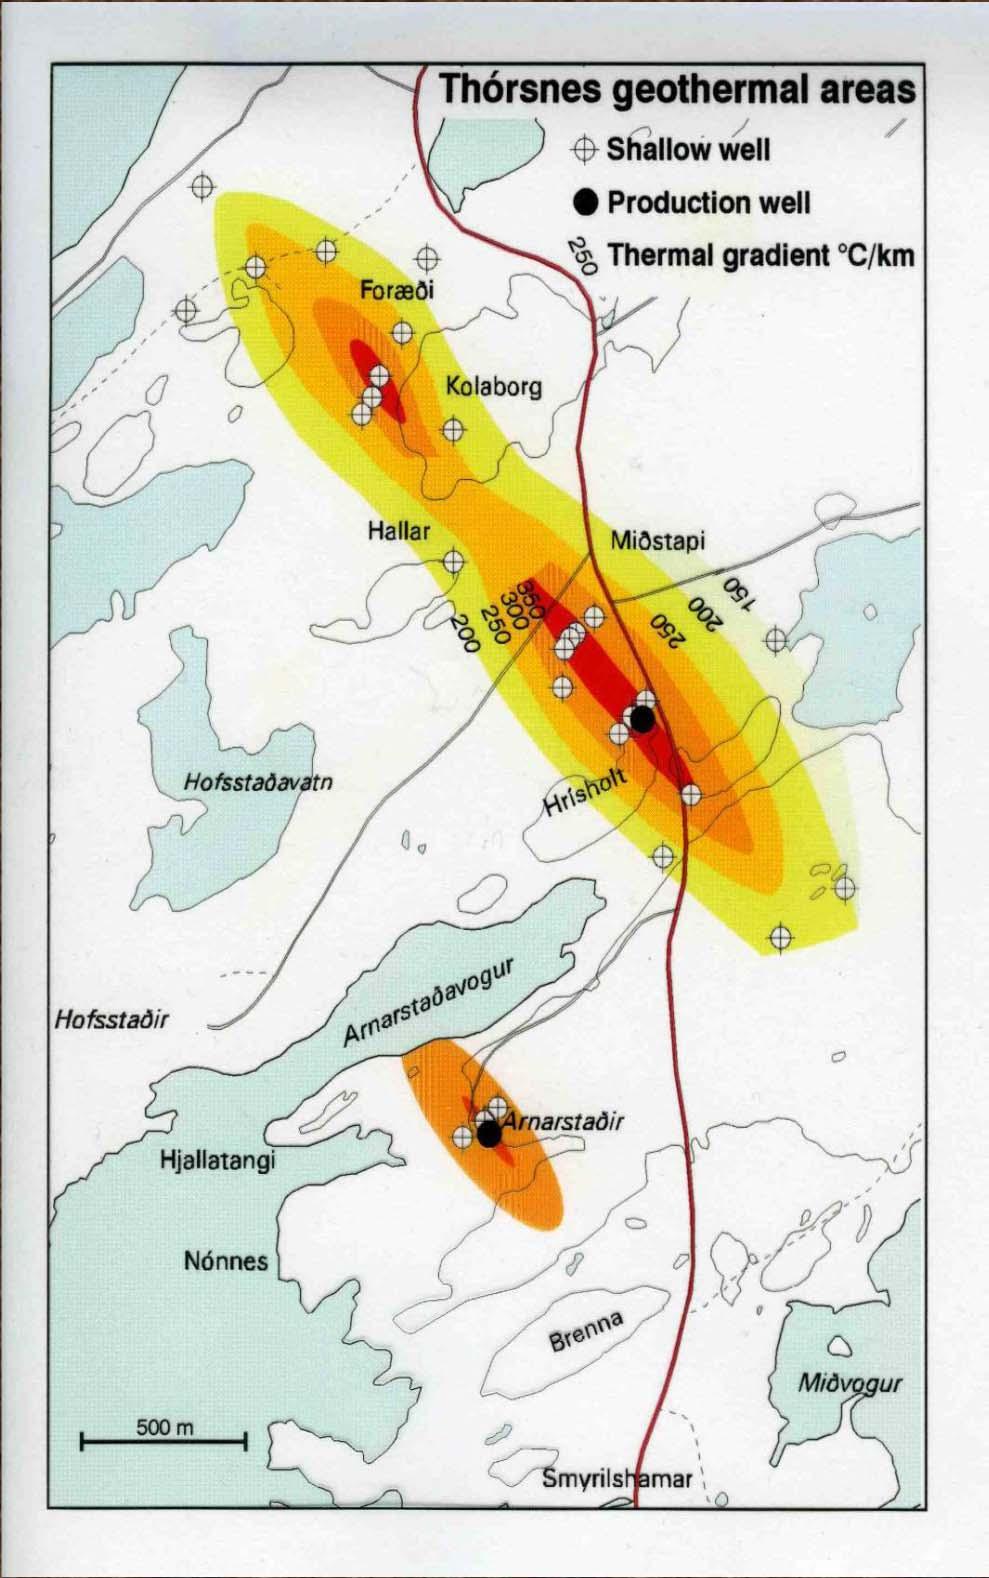 Θερμικές Μέθοδοι Χάρτης διαφορικού θερμότητας από τις Thórsnes γεωθερμικές περιοχές, Δυτική Ισλανδία, όπου δεν υπάρχει γνωστή γεωθερμική